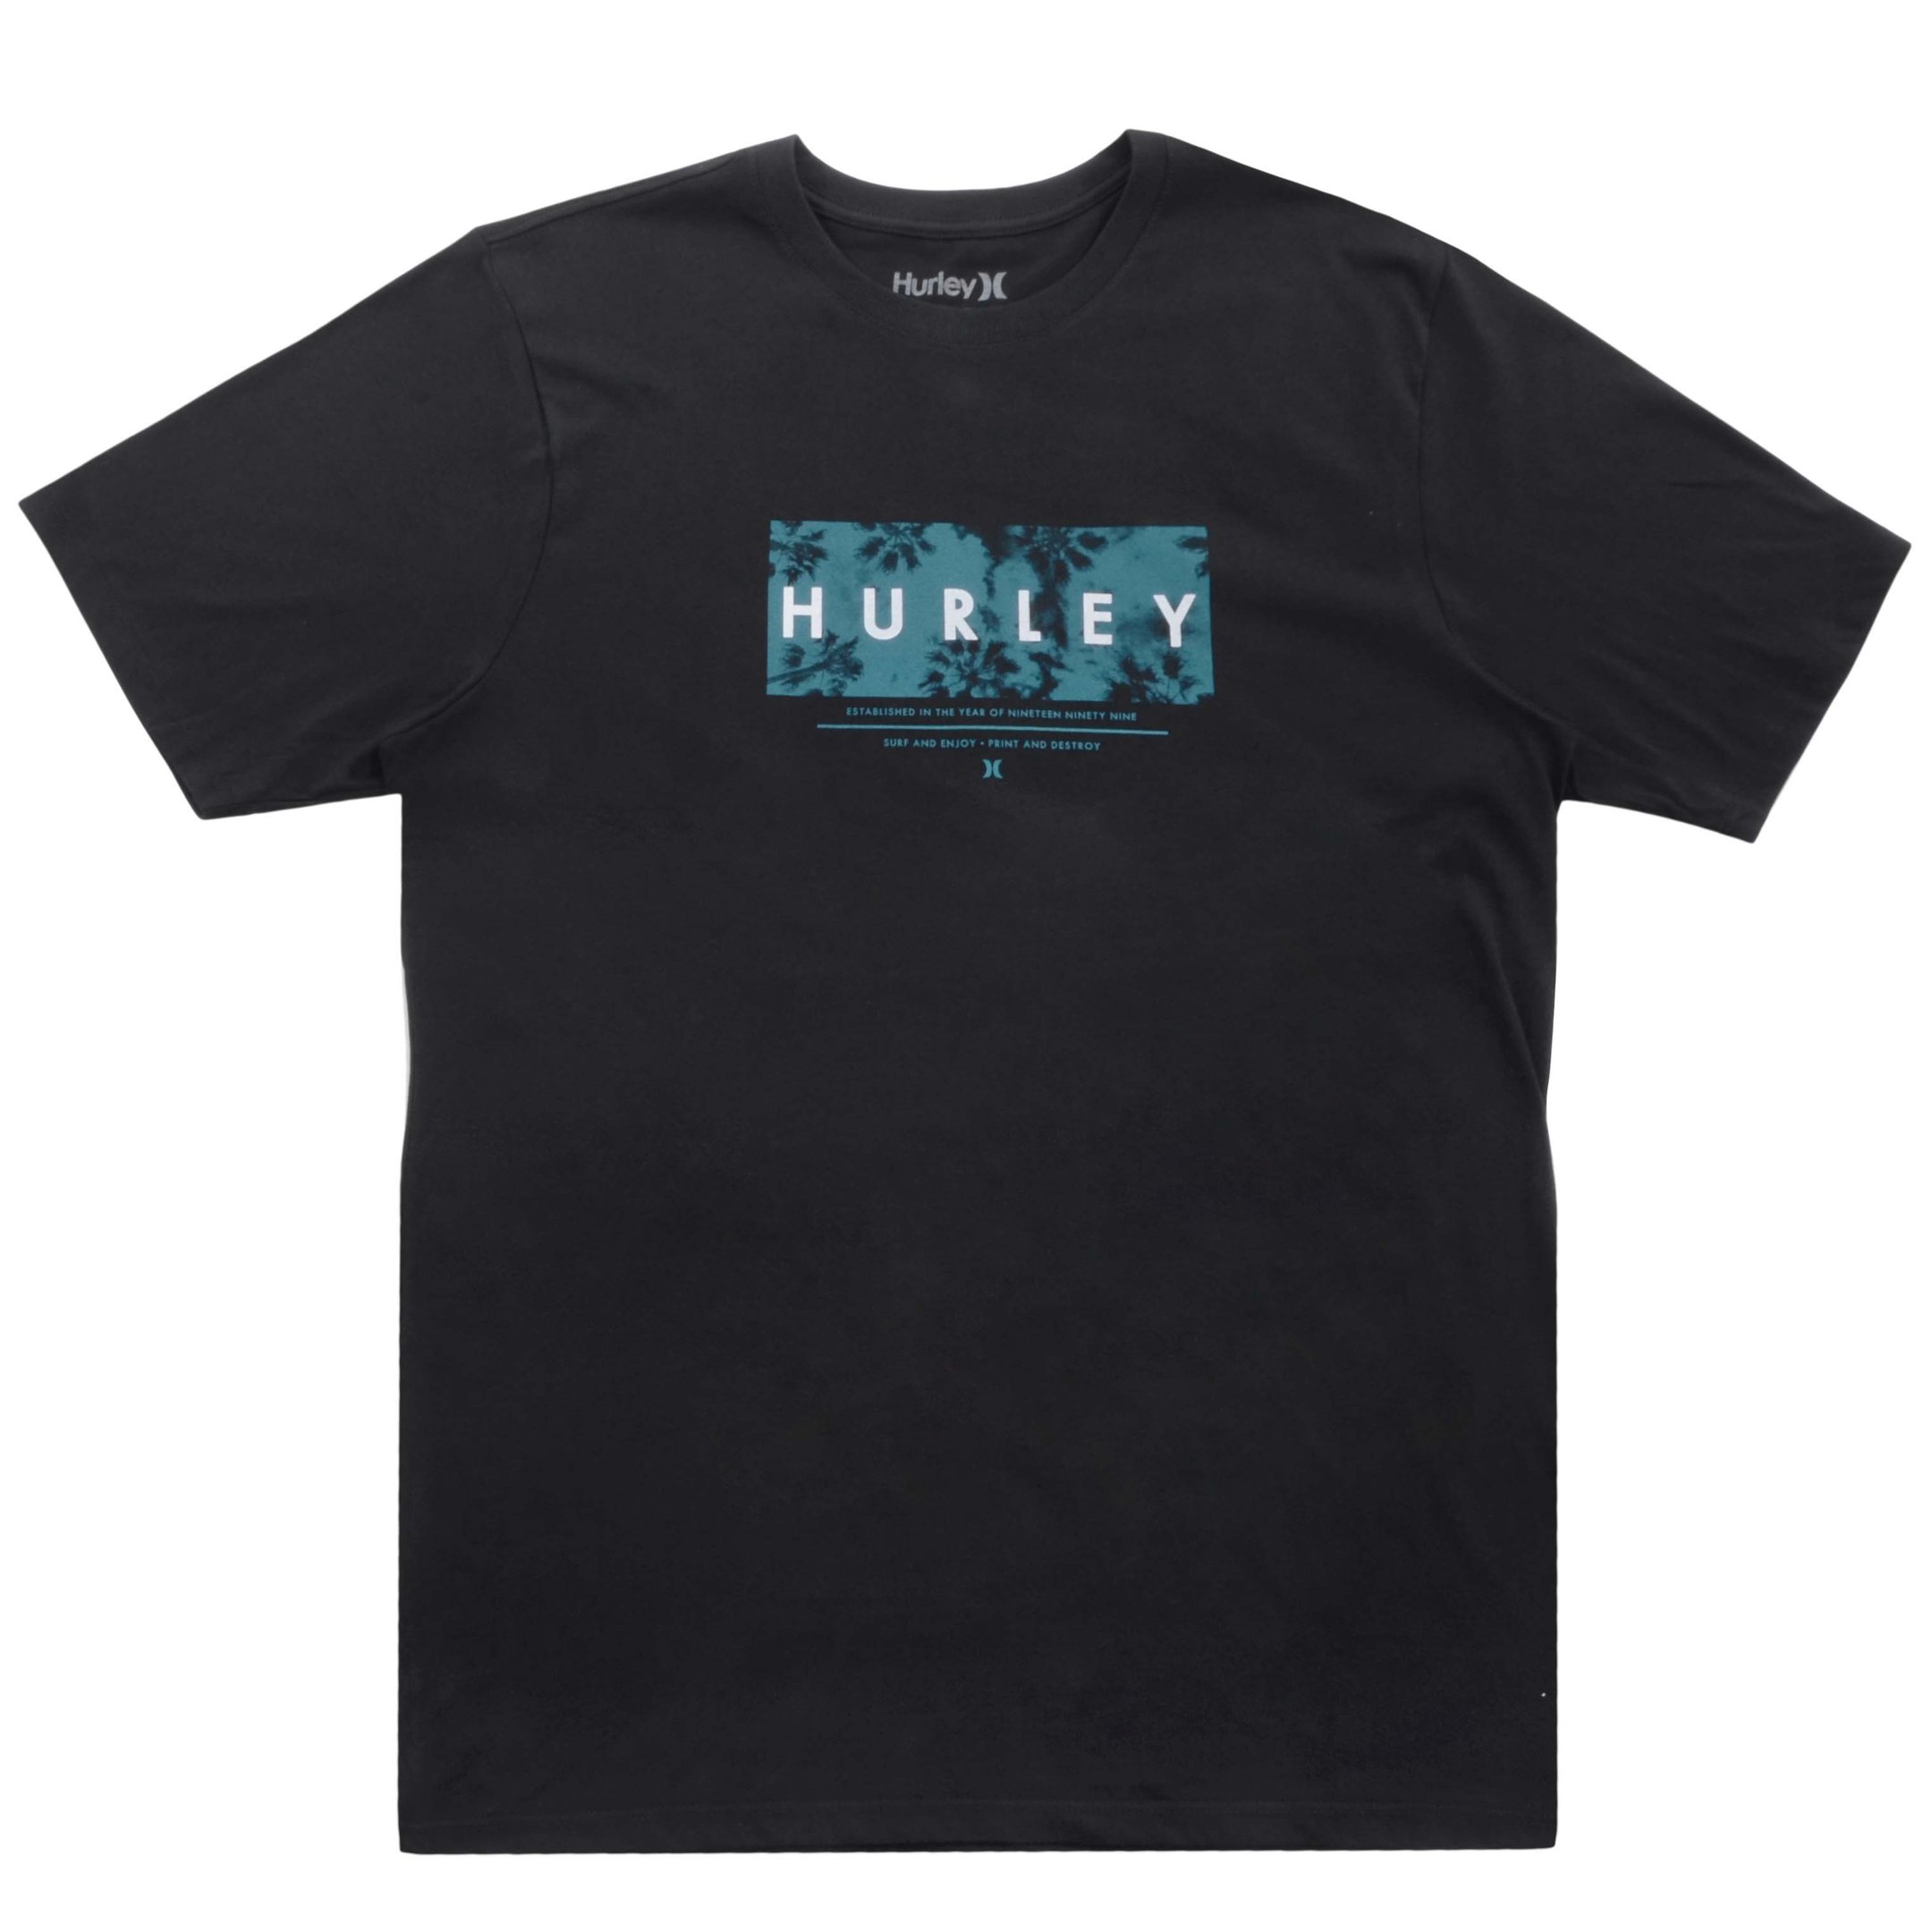 Camiseta Hurley Establishedover Big